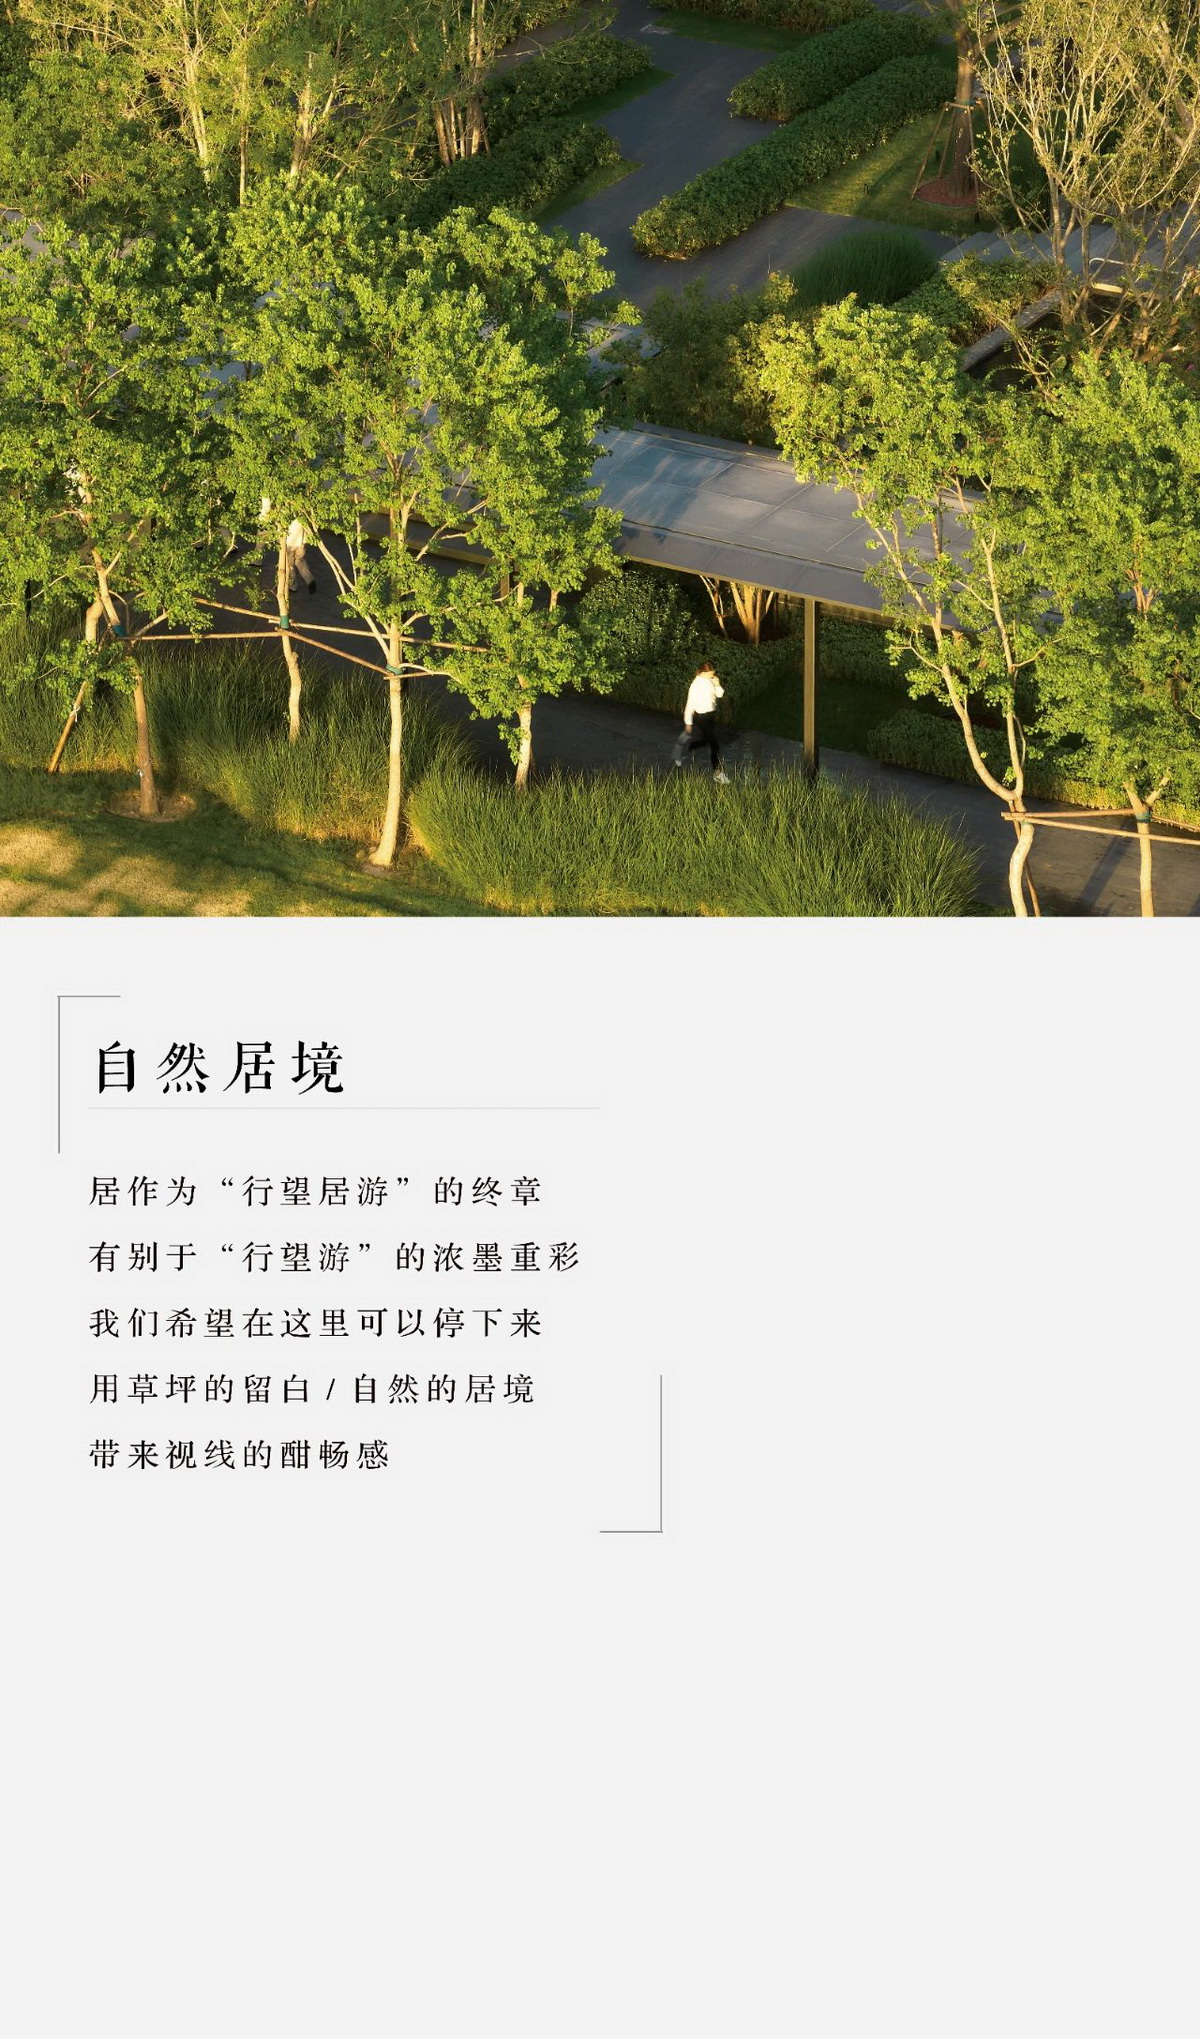 渭南·上上玫瑰园 景观设计 / 山水比德